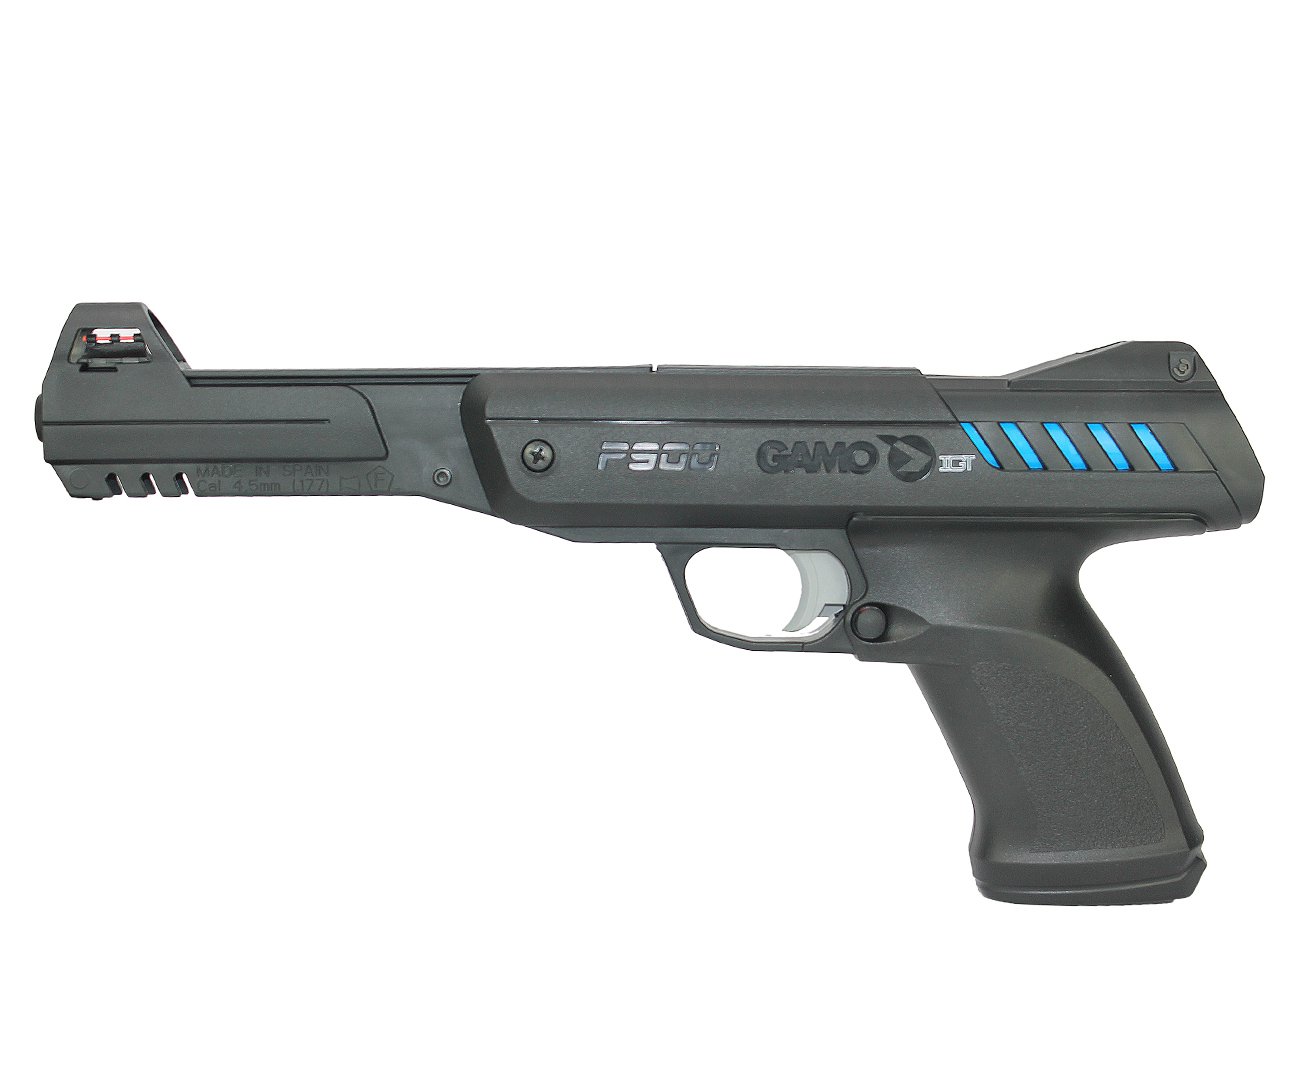 Pistola De Pressão Modelo P-900 Gas Ram Igt Cal 4.5mm